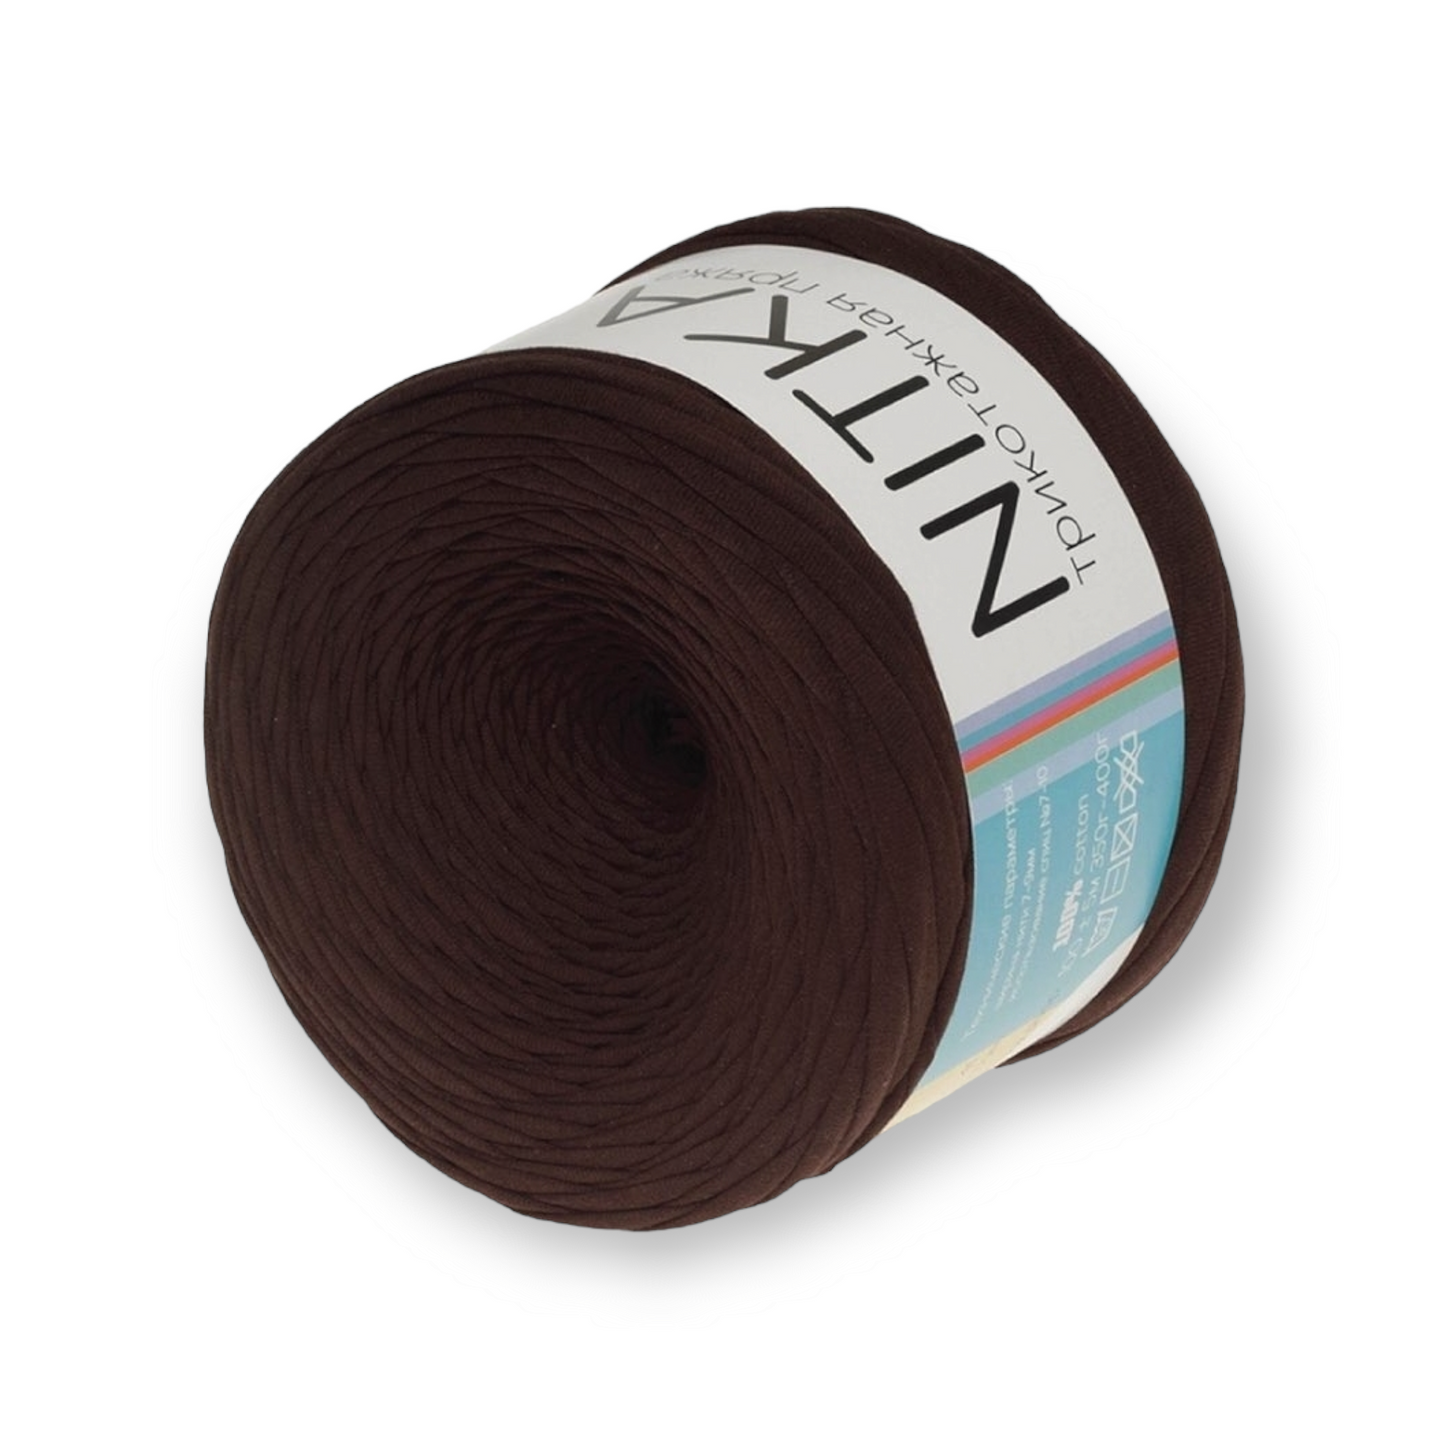 Fil dégradé de couleur NITKA fil textile de Russie 100% coton 1A qualité 100 mètres rouleau toujours largeur constante jersey ruban jersey fil